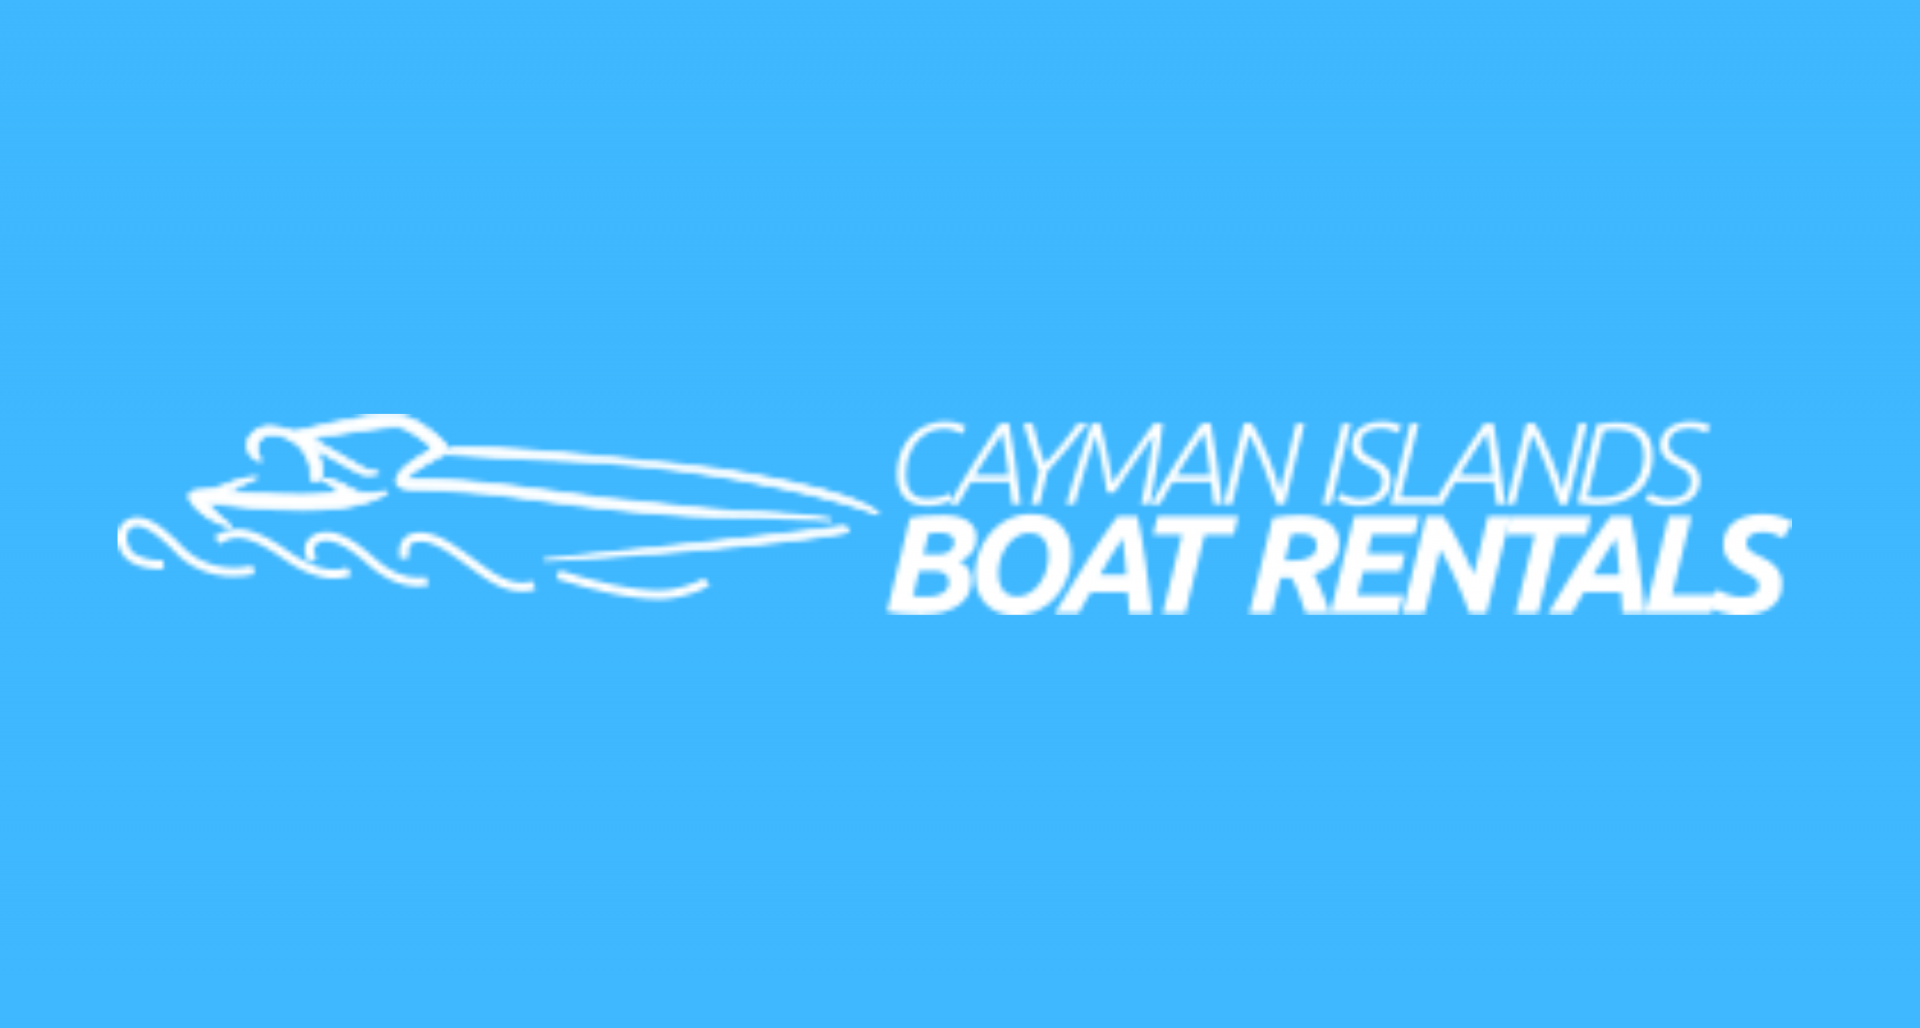 Cayman Islands Boat Rentals